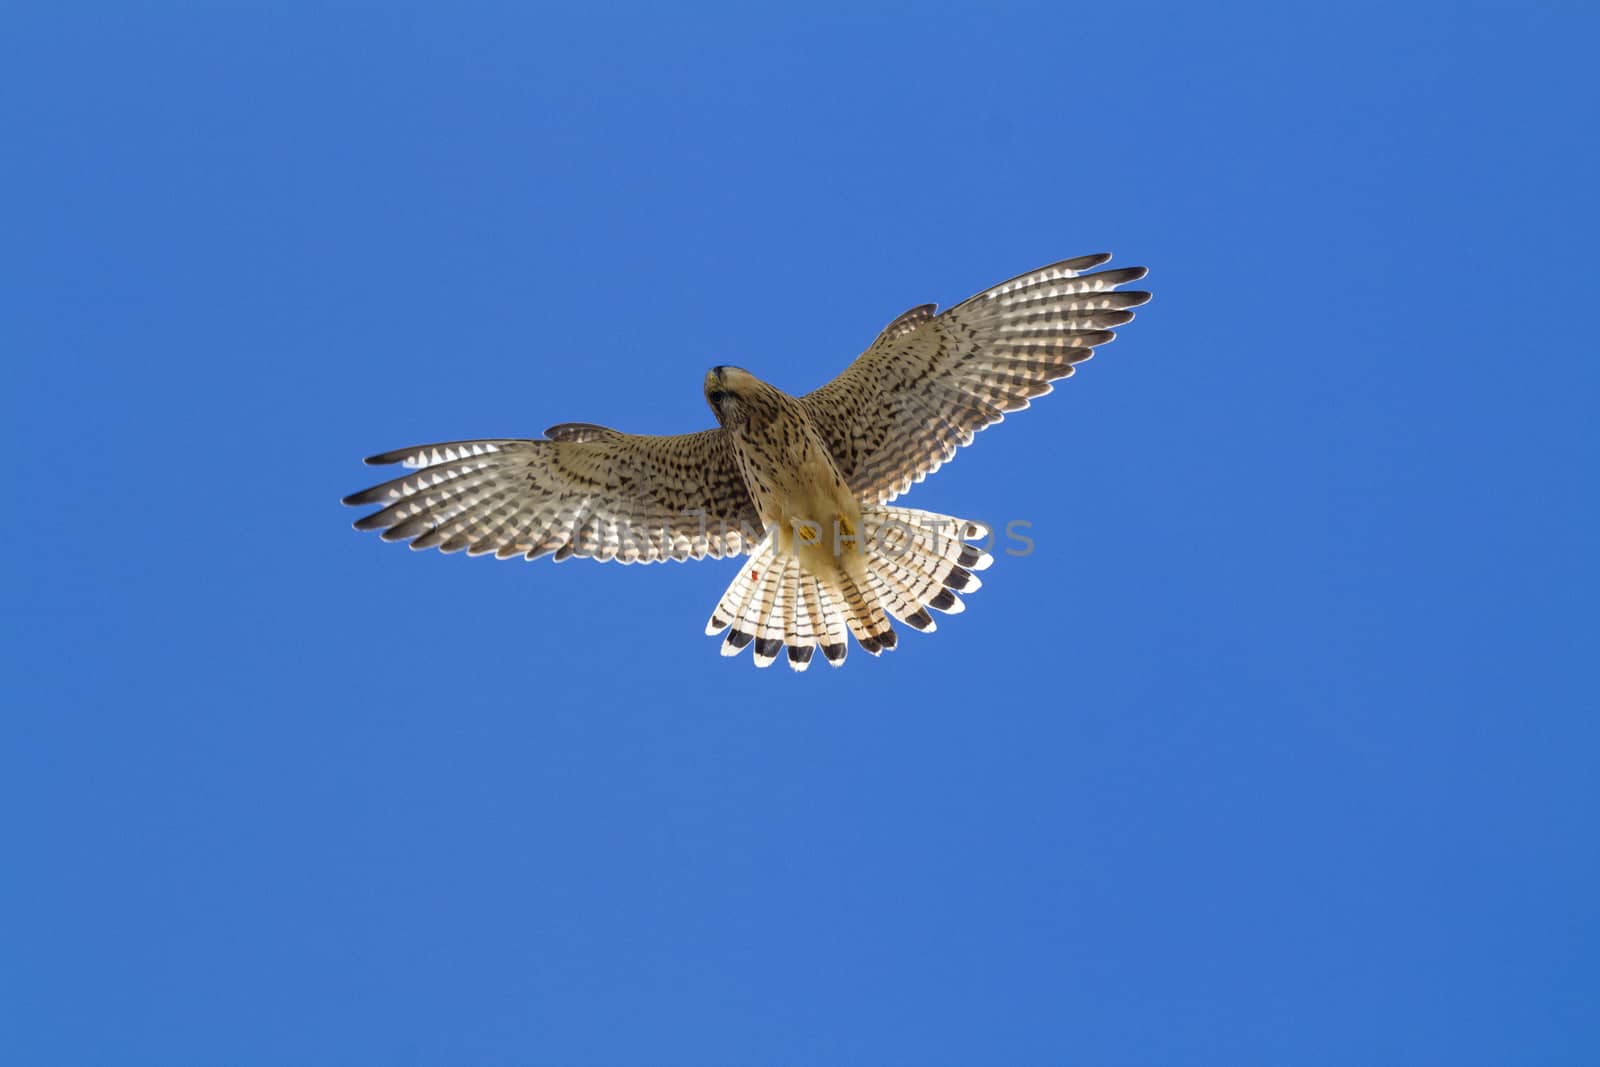 Kestrel in flight with a blue sky